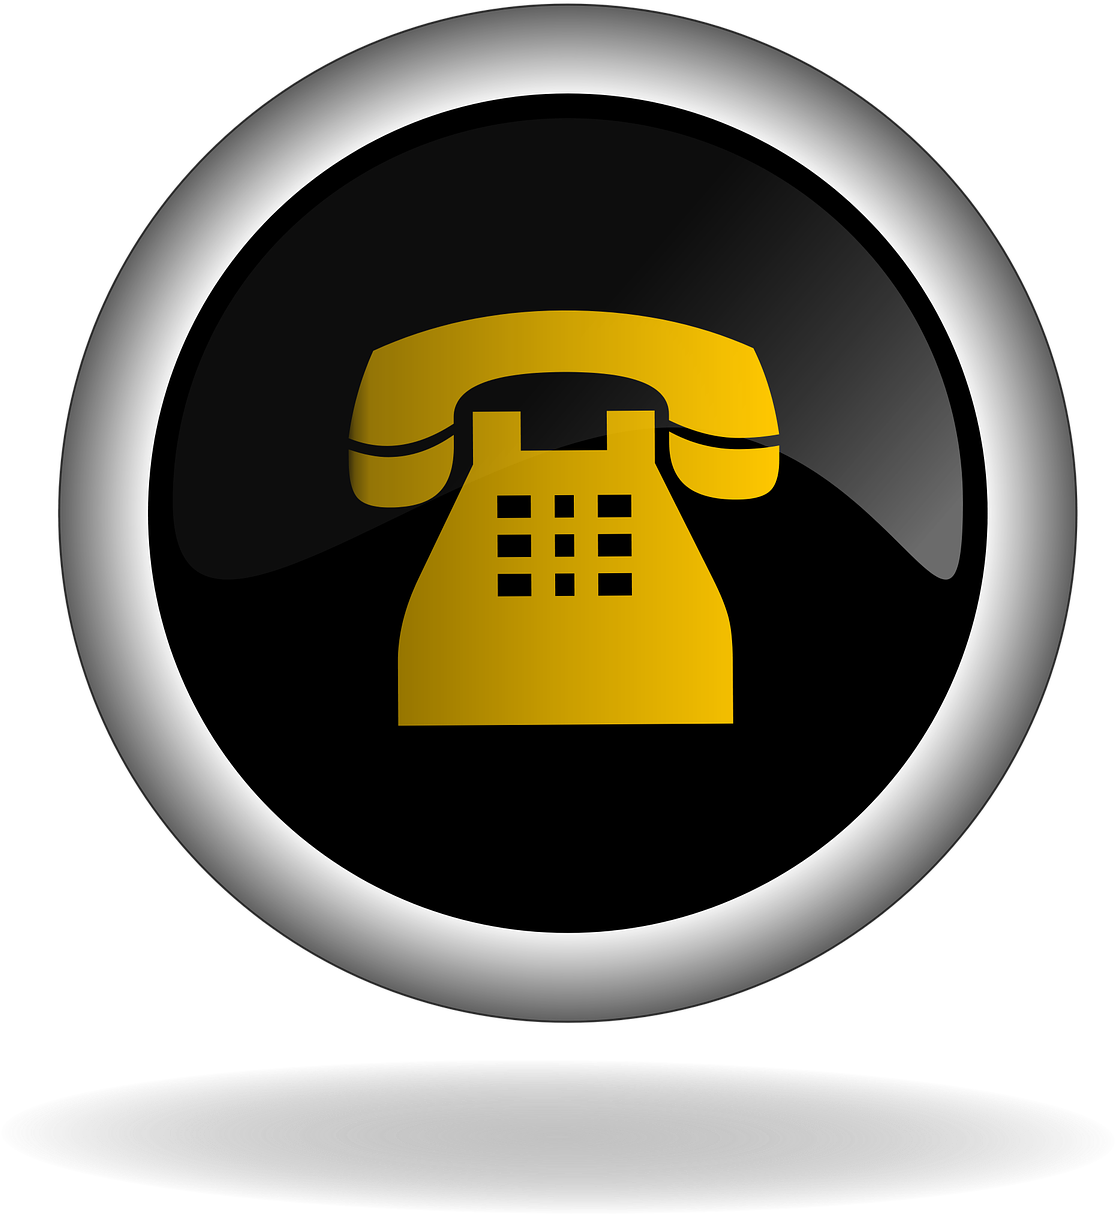 Retro Telephone Icon PNG image